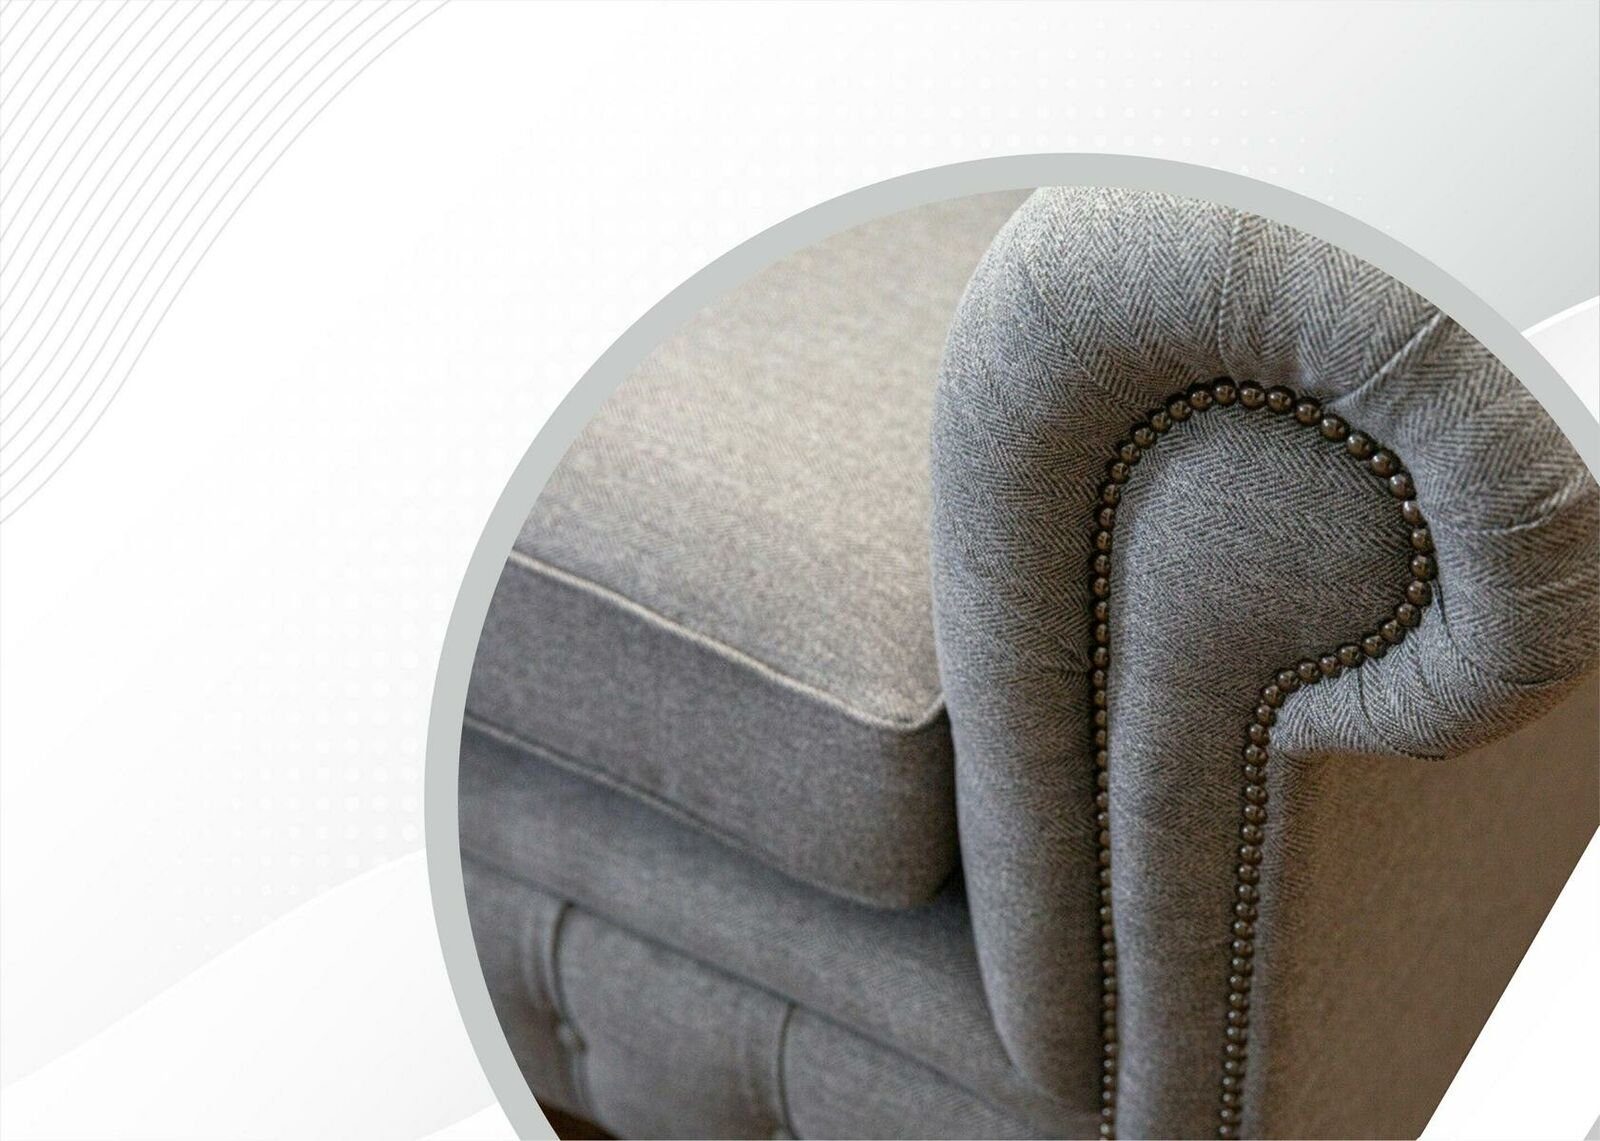 JVmoebel Chesterfield-Sofa, Chesterfield 2 Sitzer Sofas Design Polster Wohnzimmer Textil Sofa Hellgrau Stoff